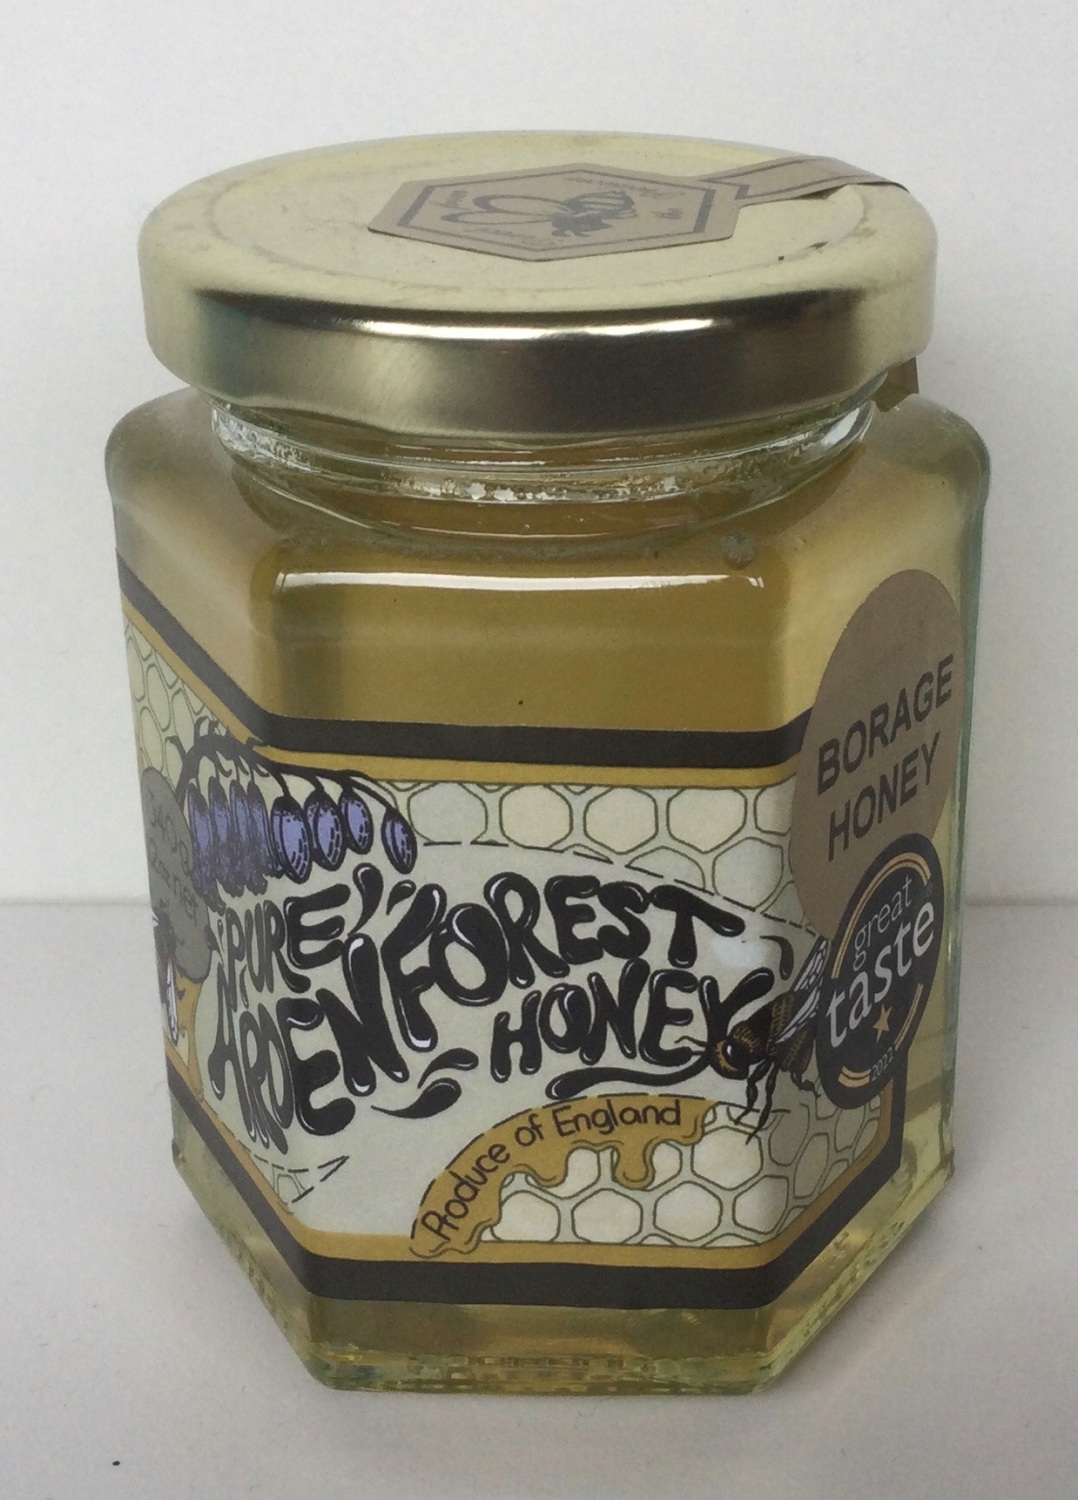 Borage Honey